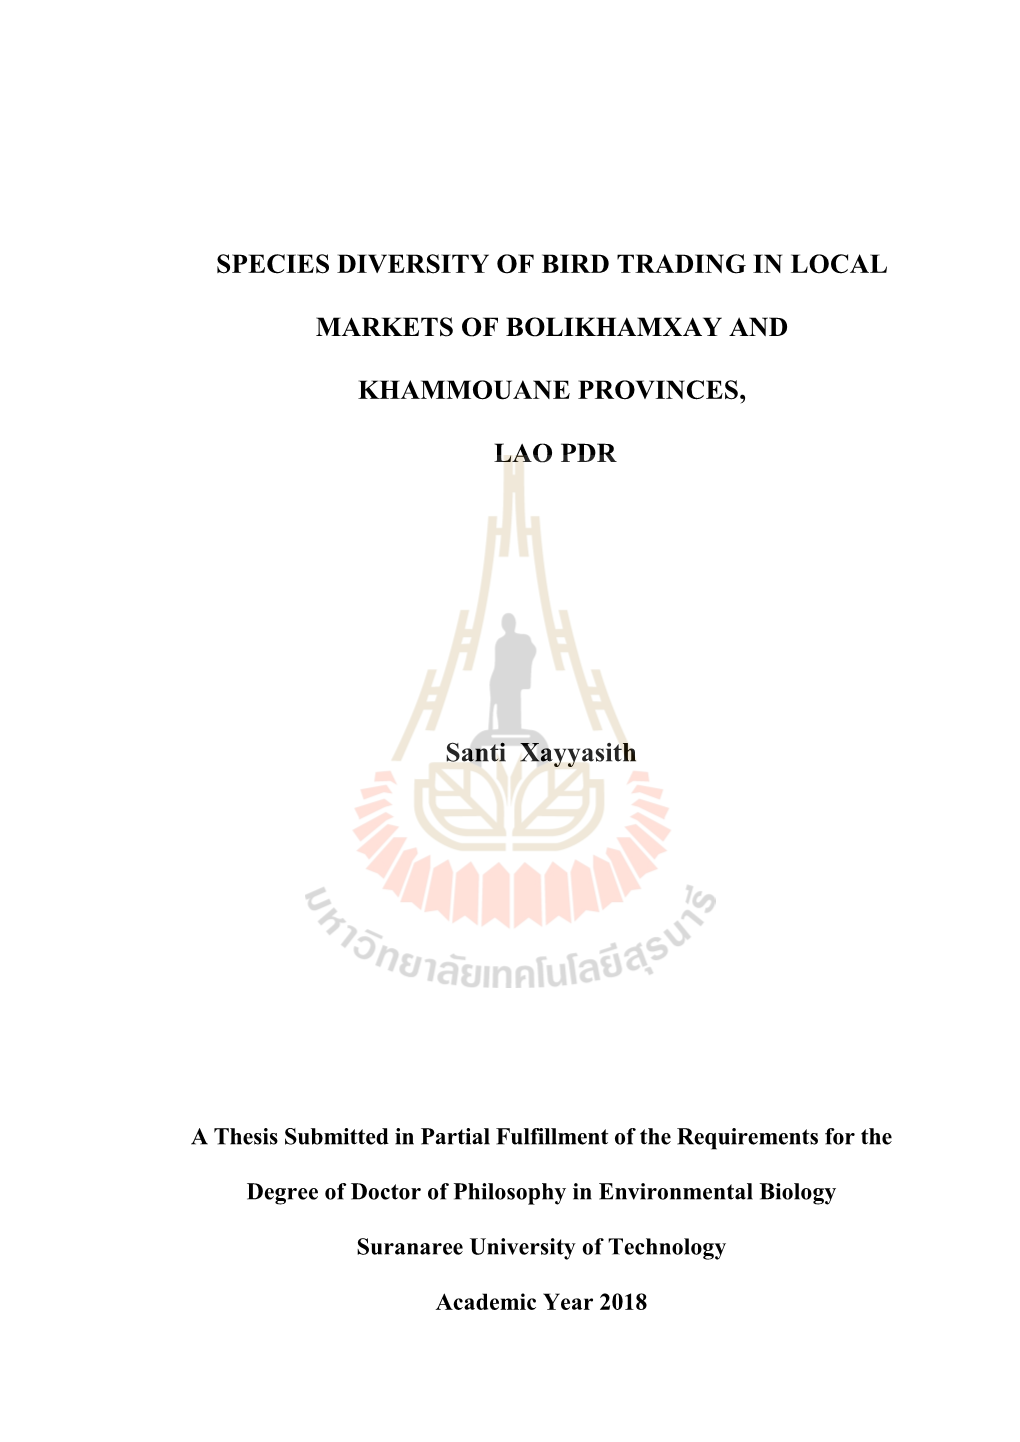 SPECIES DIVERSITY of BIRD TRADING in LOCAL MARKETS of BOLIKHAMXAY and KHAMMOUANE PROVINCES, LAO PDR Santi Xayyasith